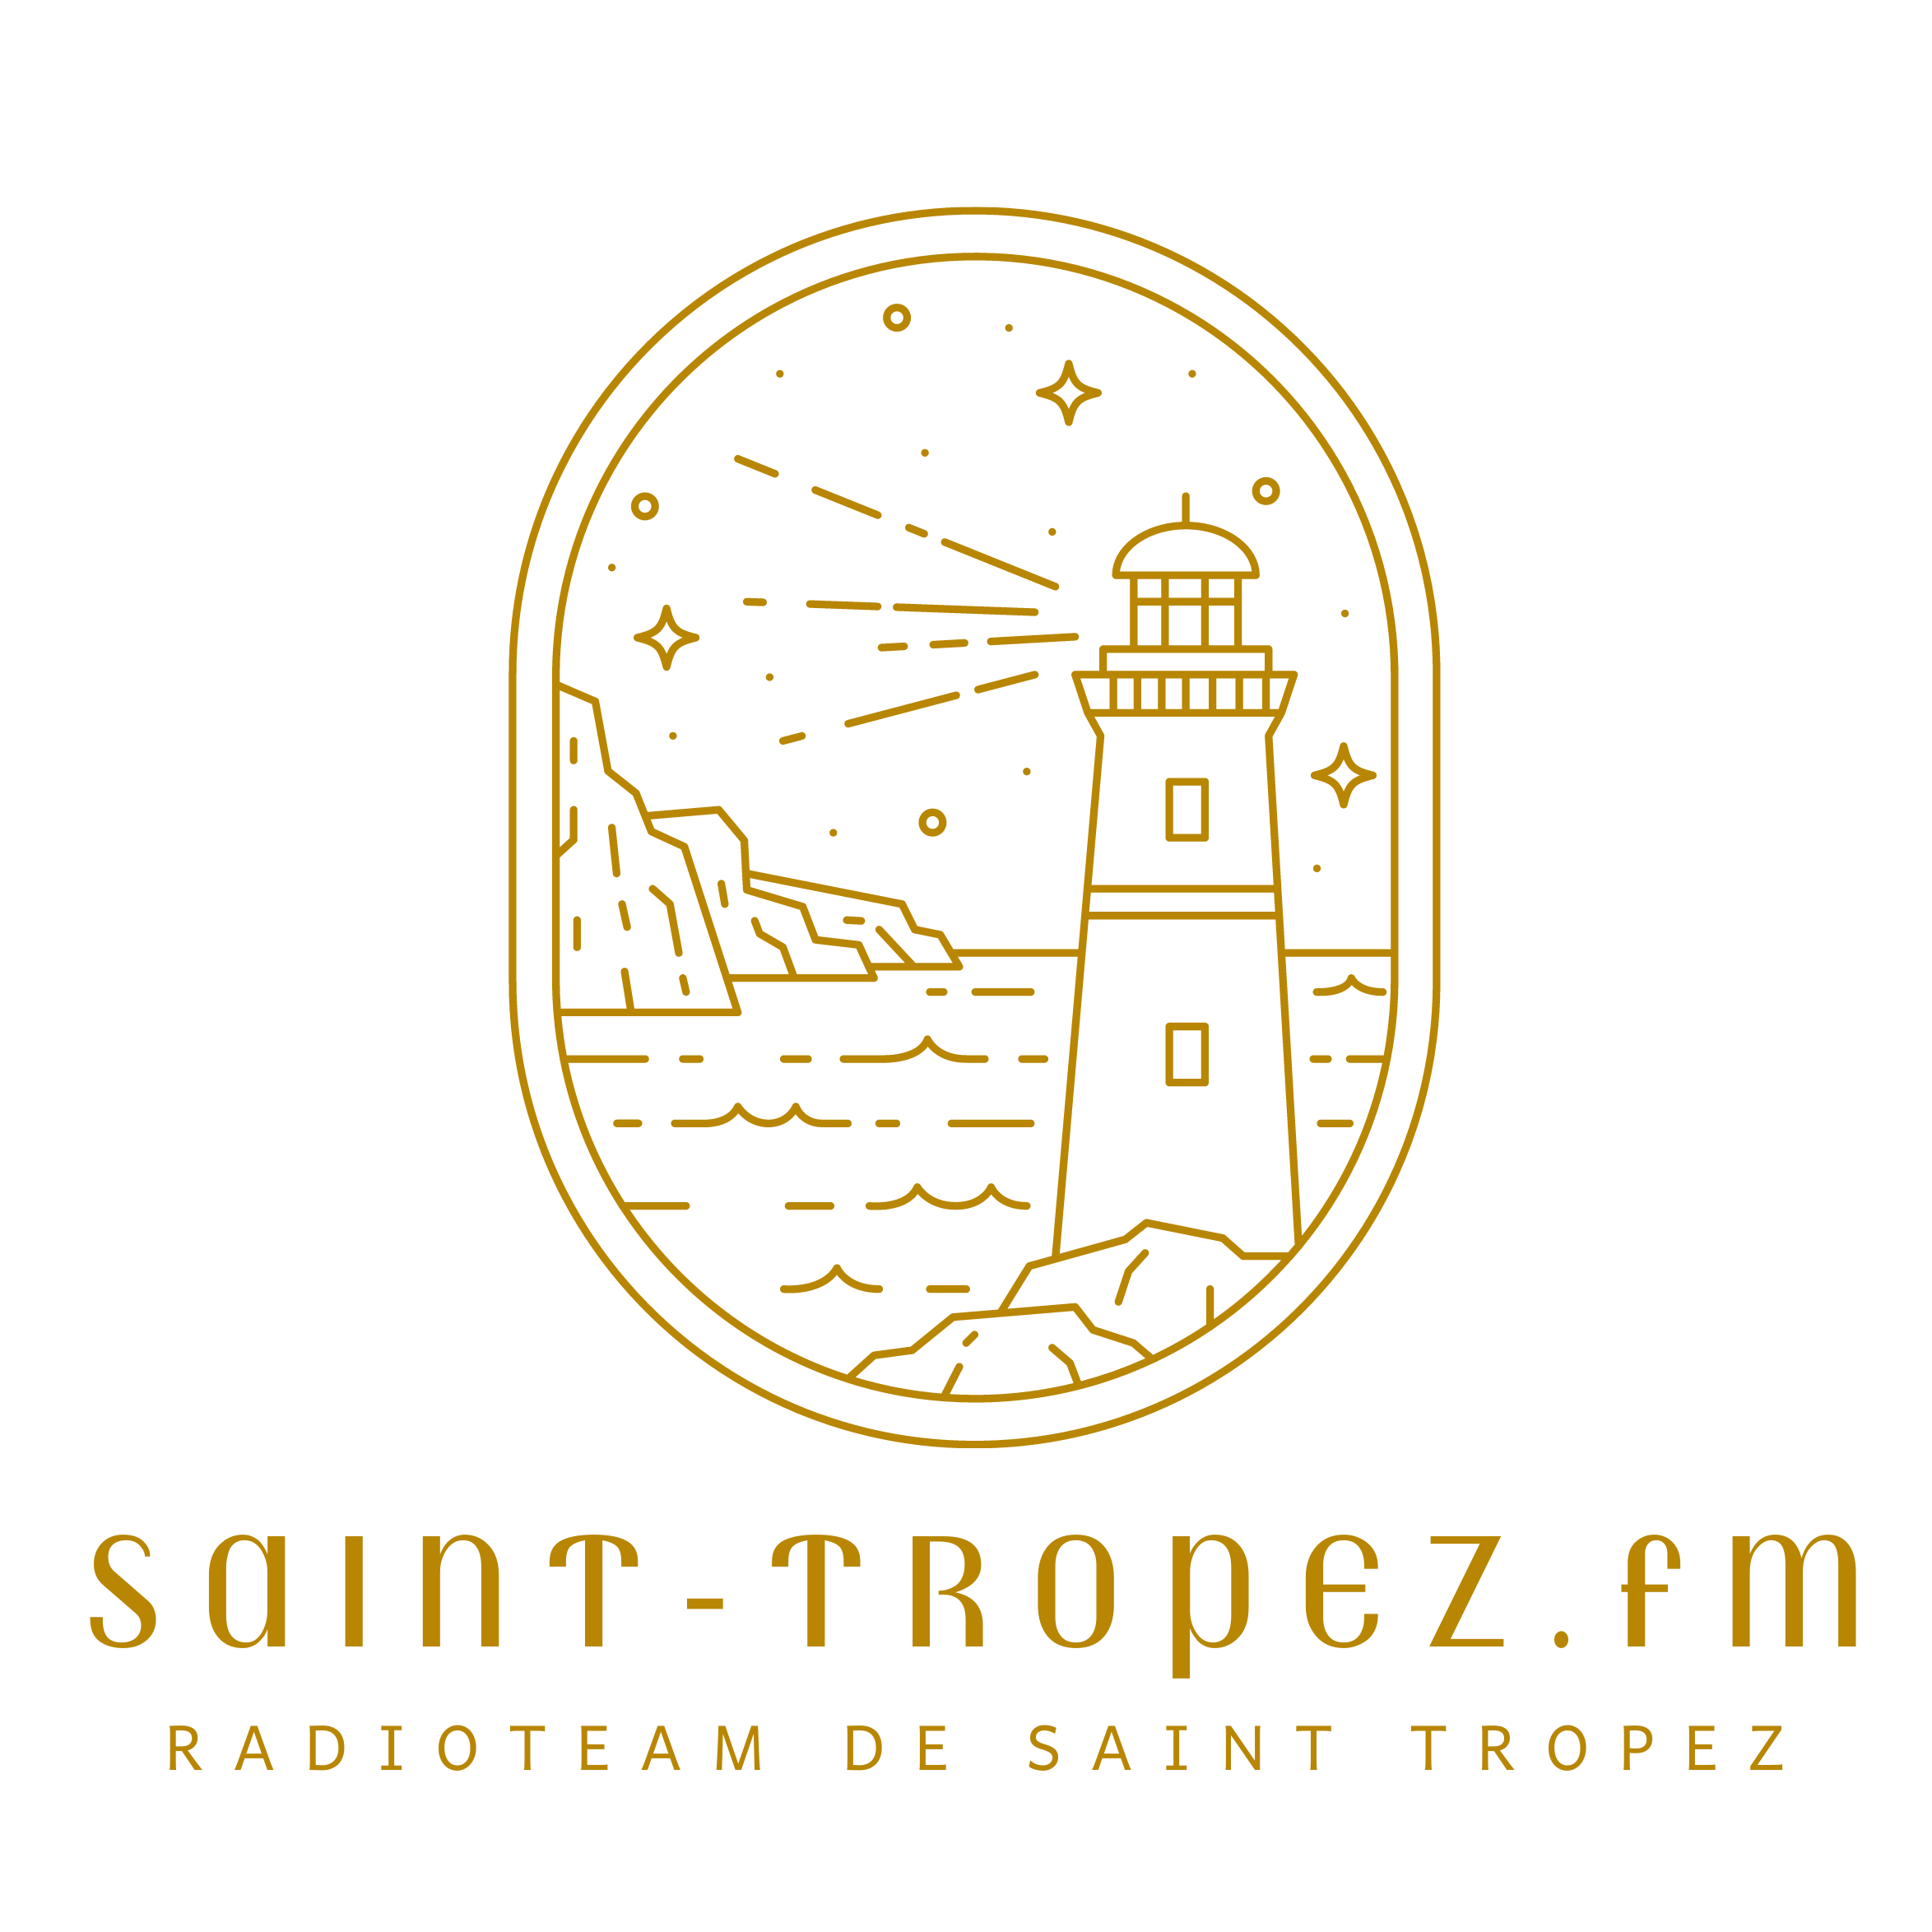 Saint-Tropez.fm